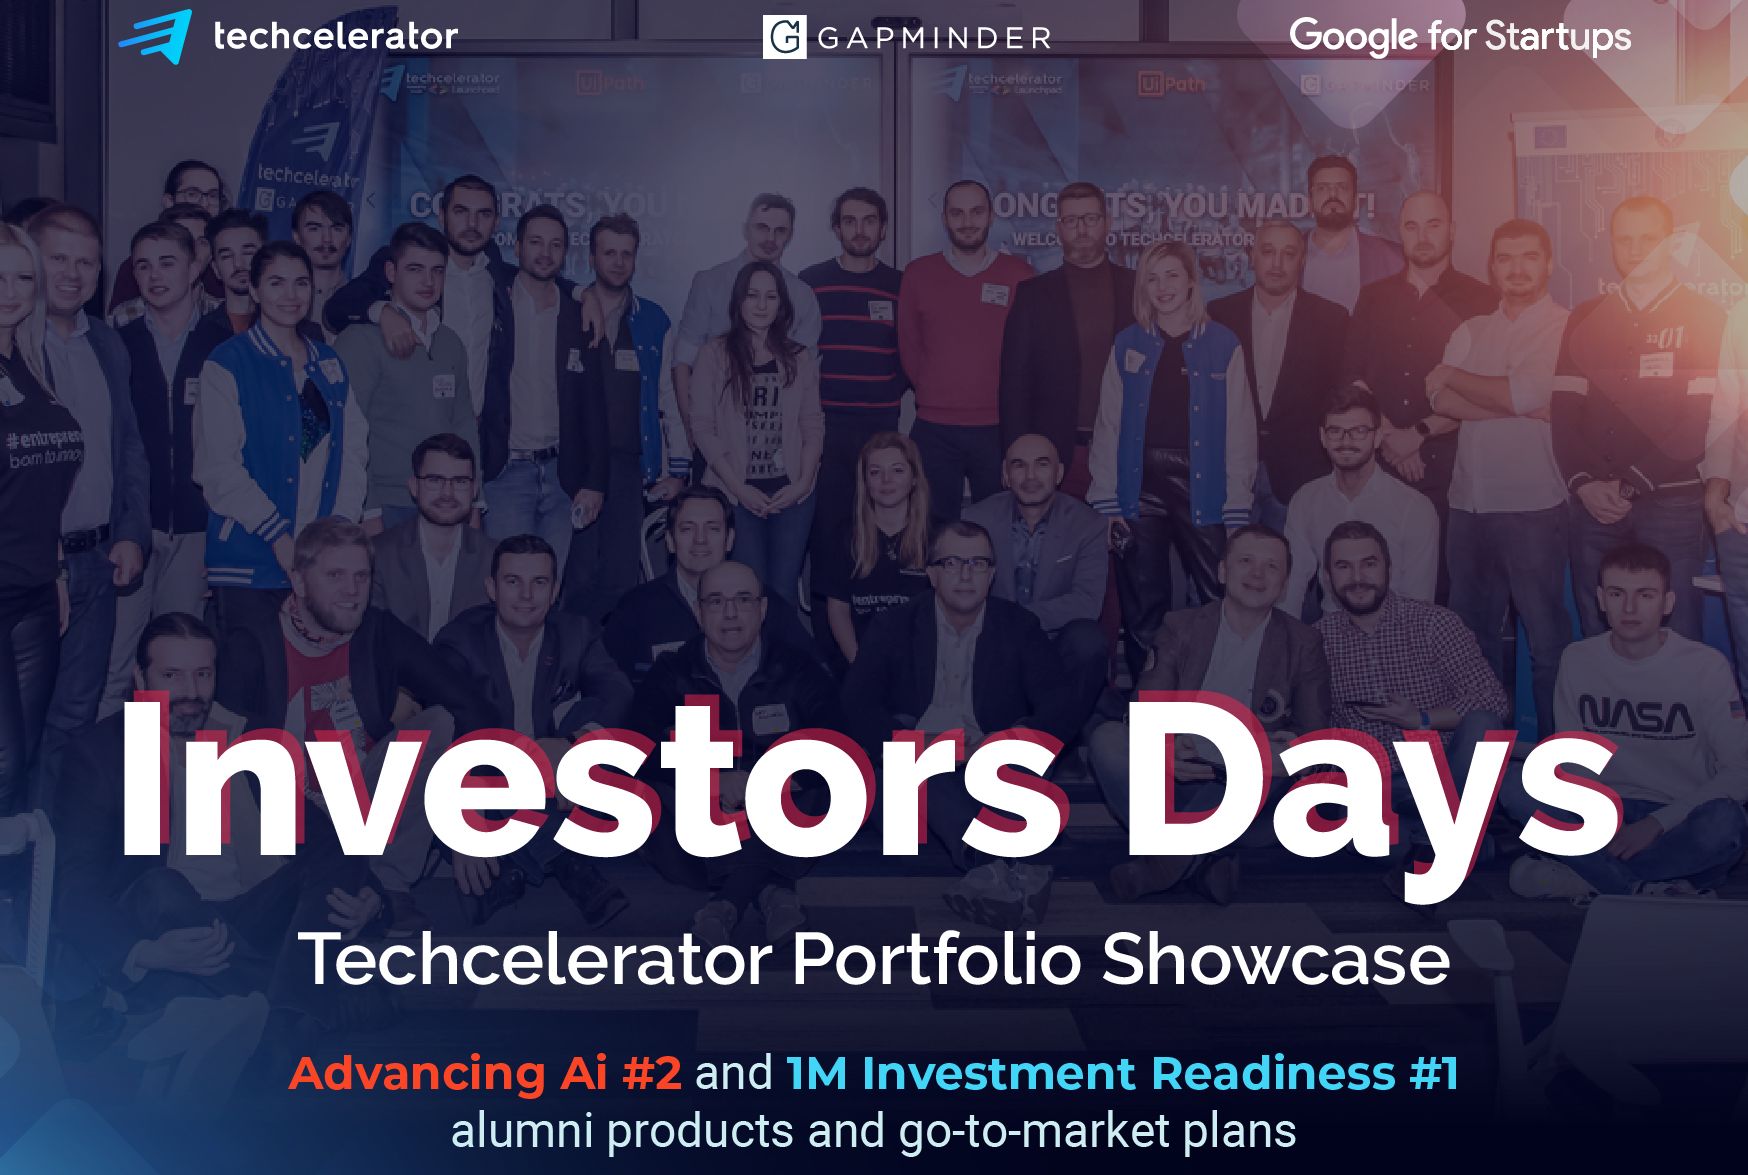 Techcelerator organizează INVESTORS DAYS, evenimentul de pitching care prezintă noi oportunități de investiții în start-up-uri high-tech